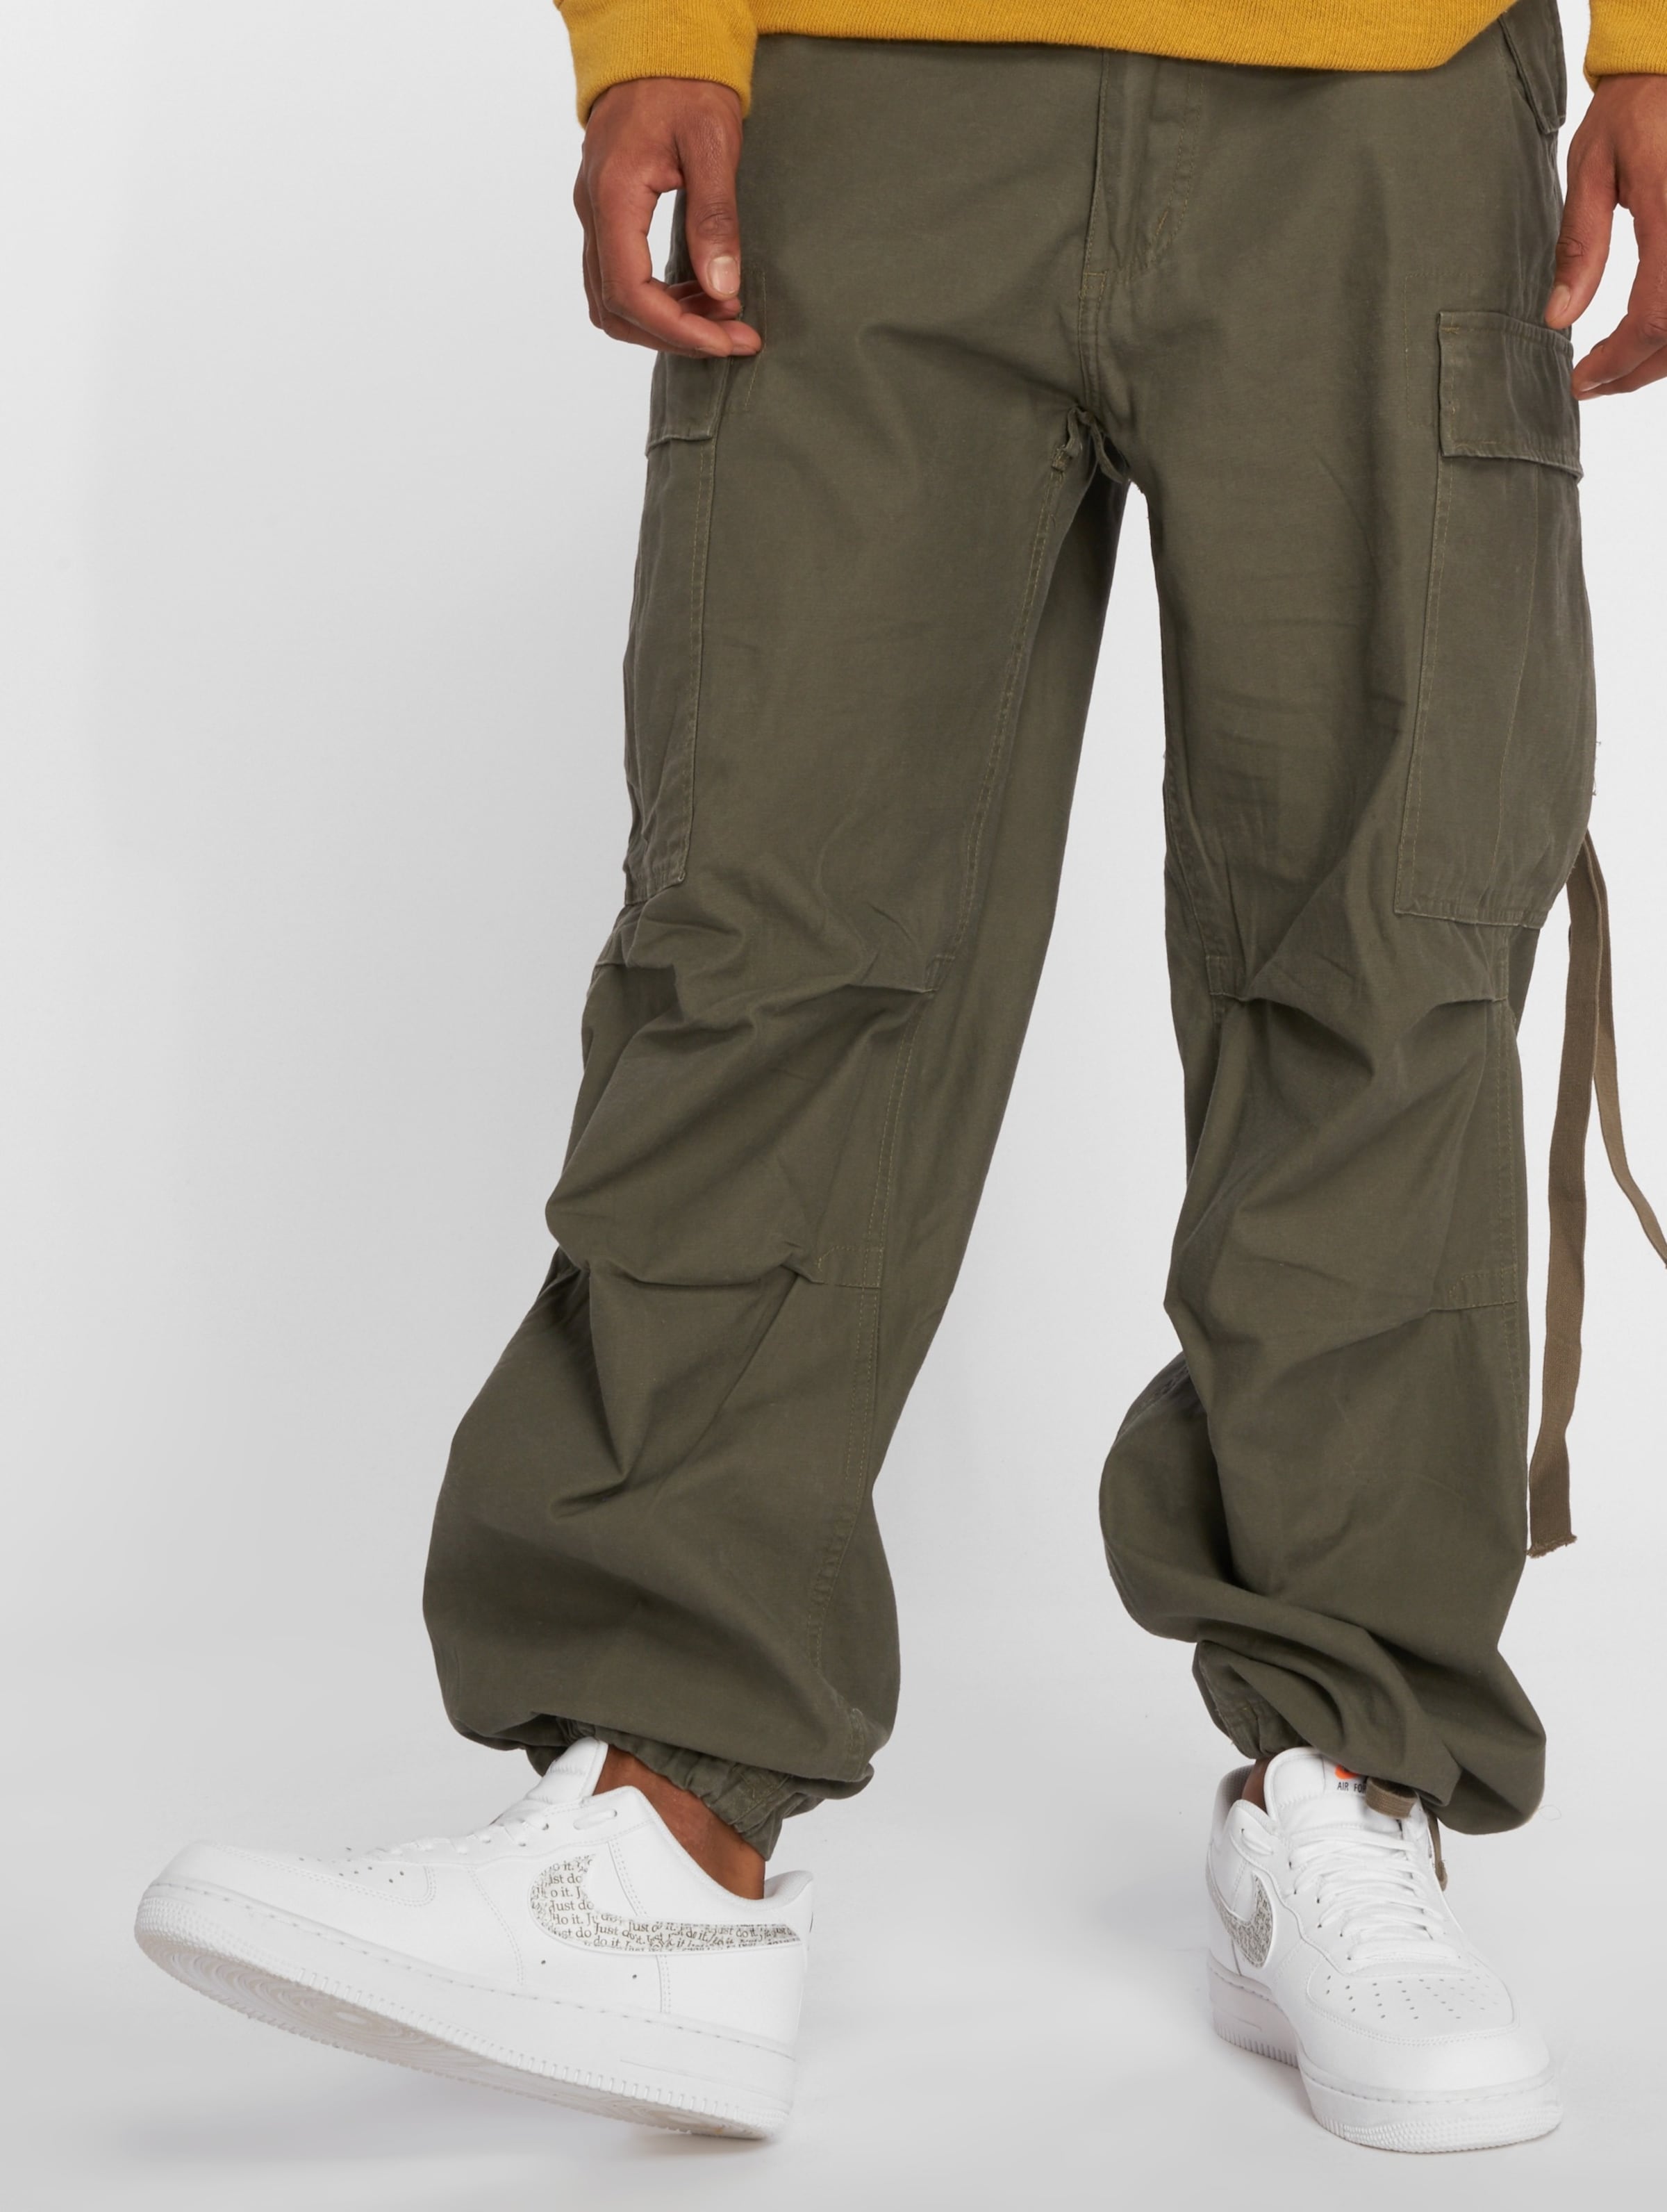 Brandit Vintage Cargo Pants olive - Gangstagroup.com - Online Hip Hop  Fashion Store